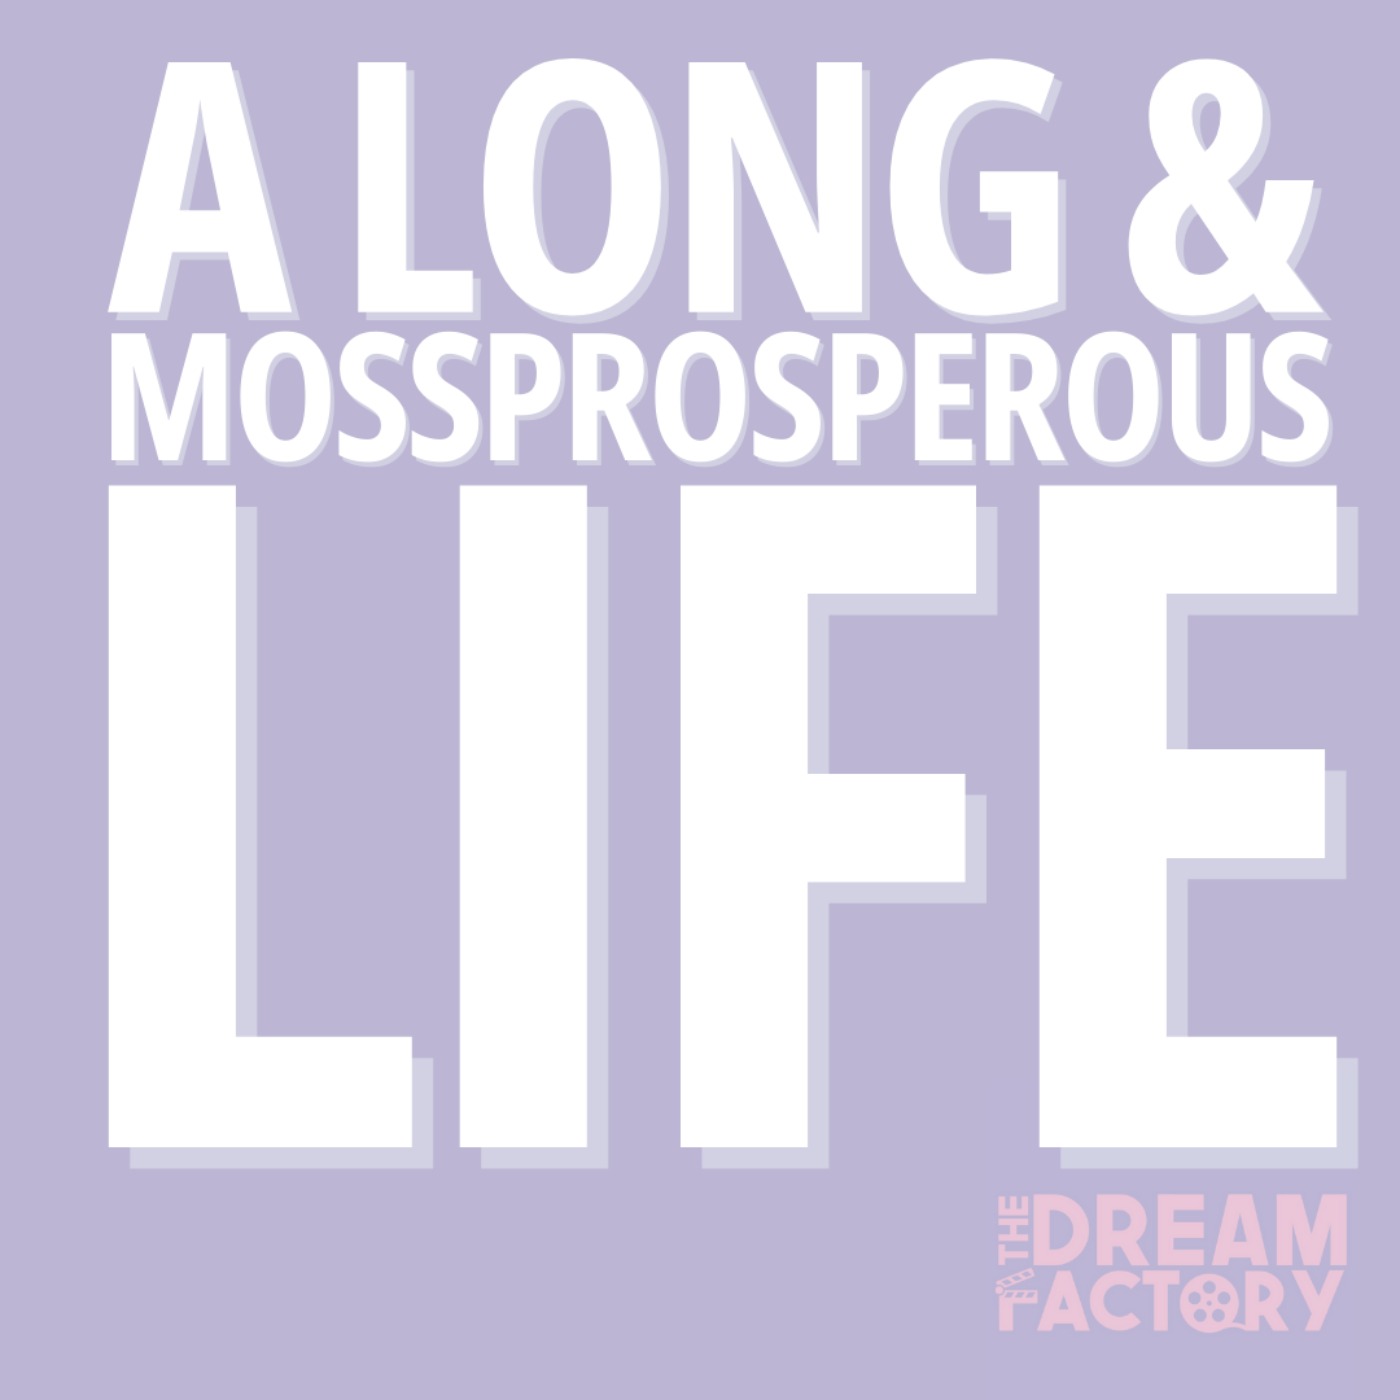 A Long & Mossprosperous Life